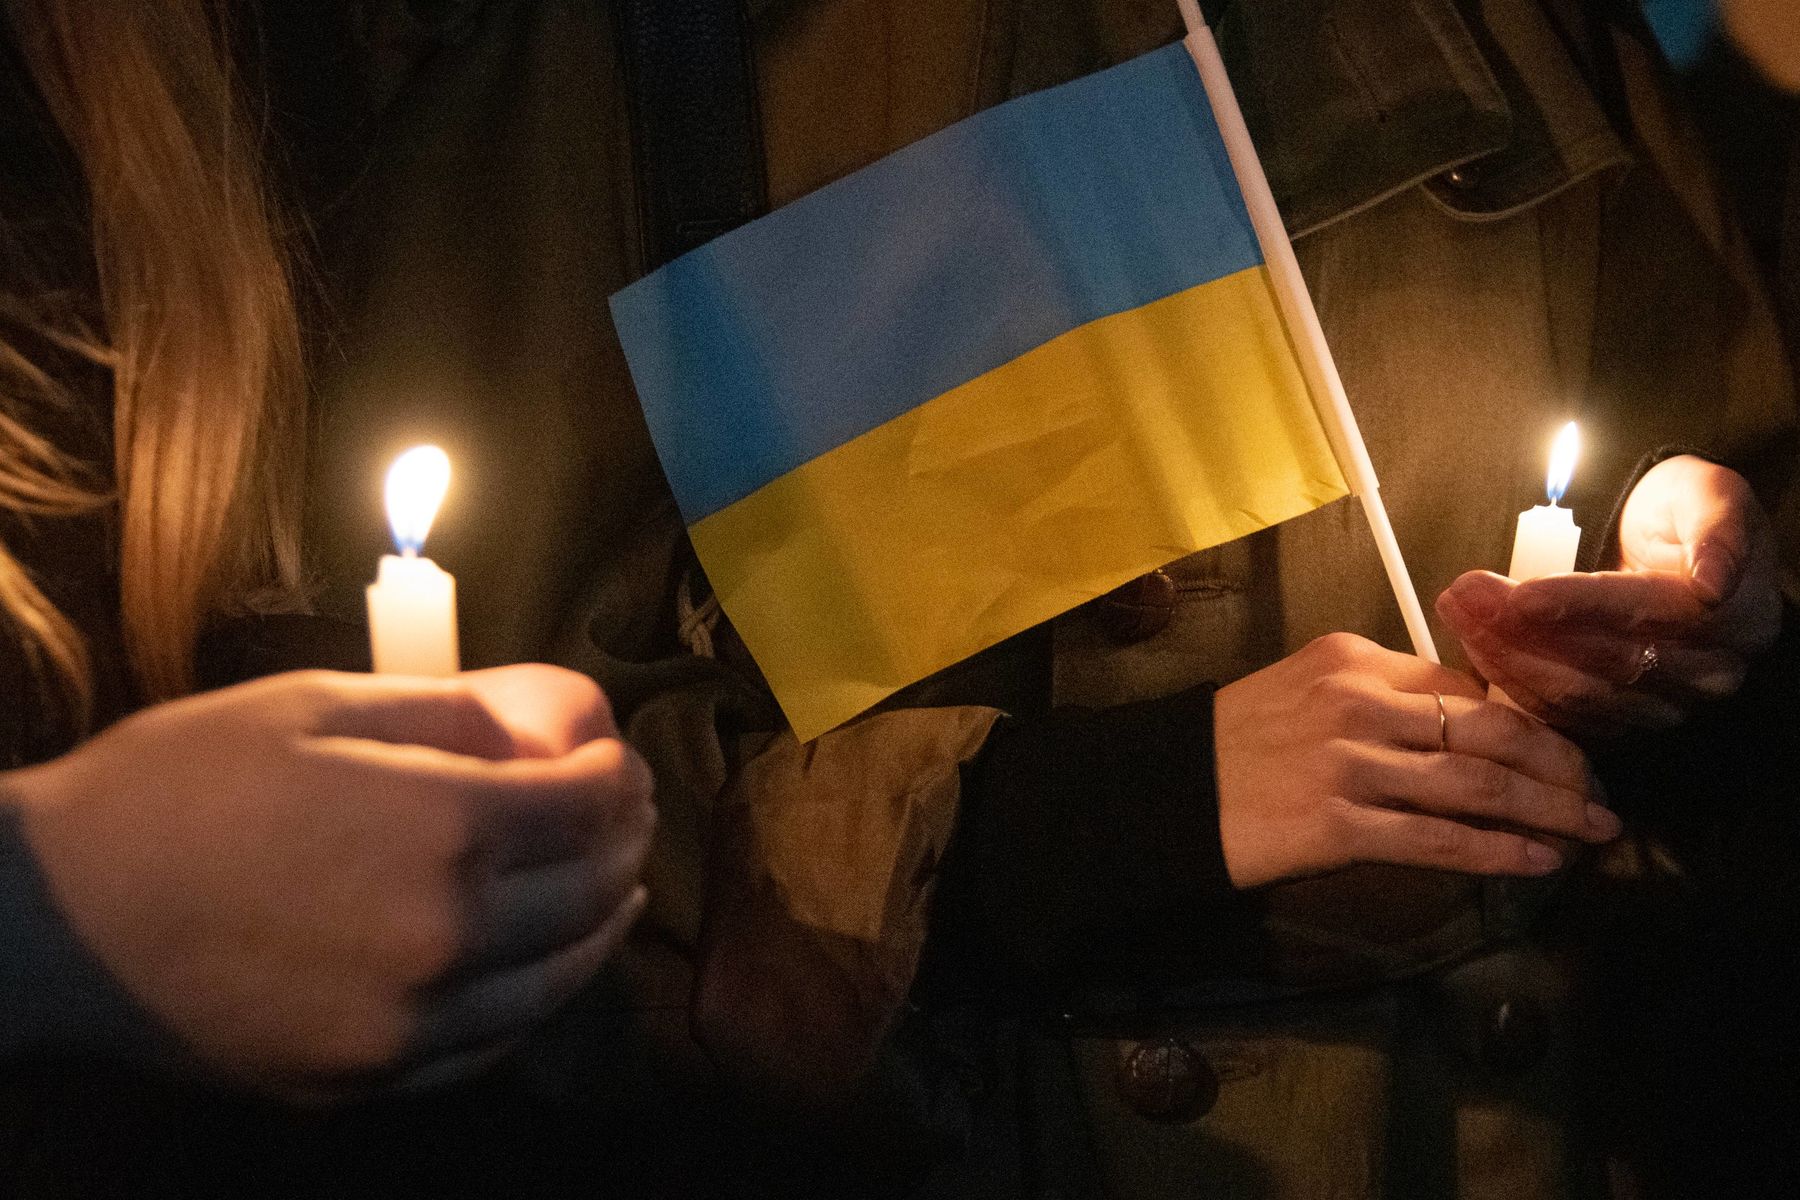 Ланцюг світла та молитви: у Франції запалюватимуть свічки за Україну